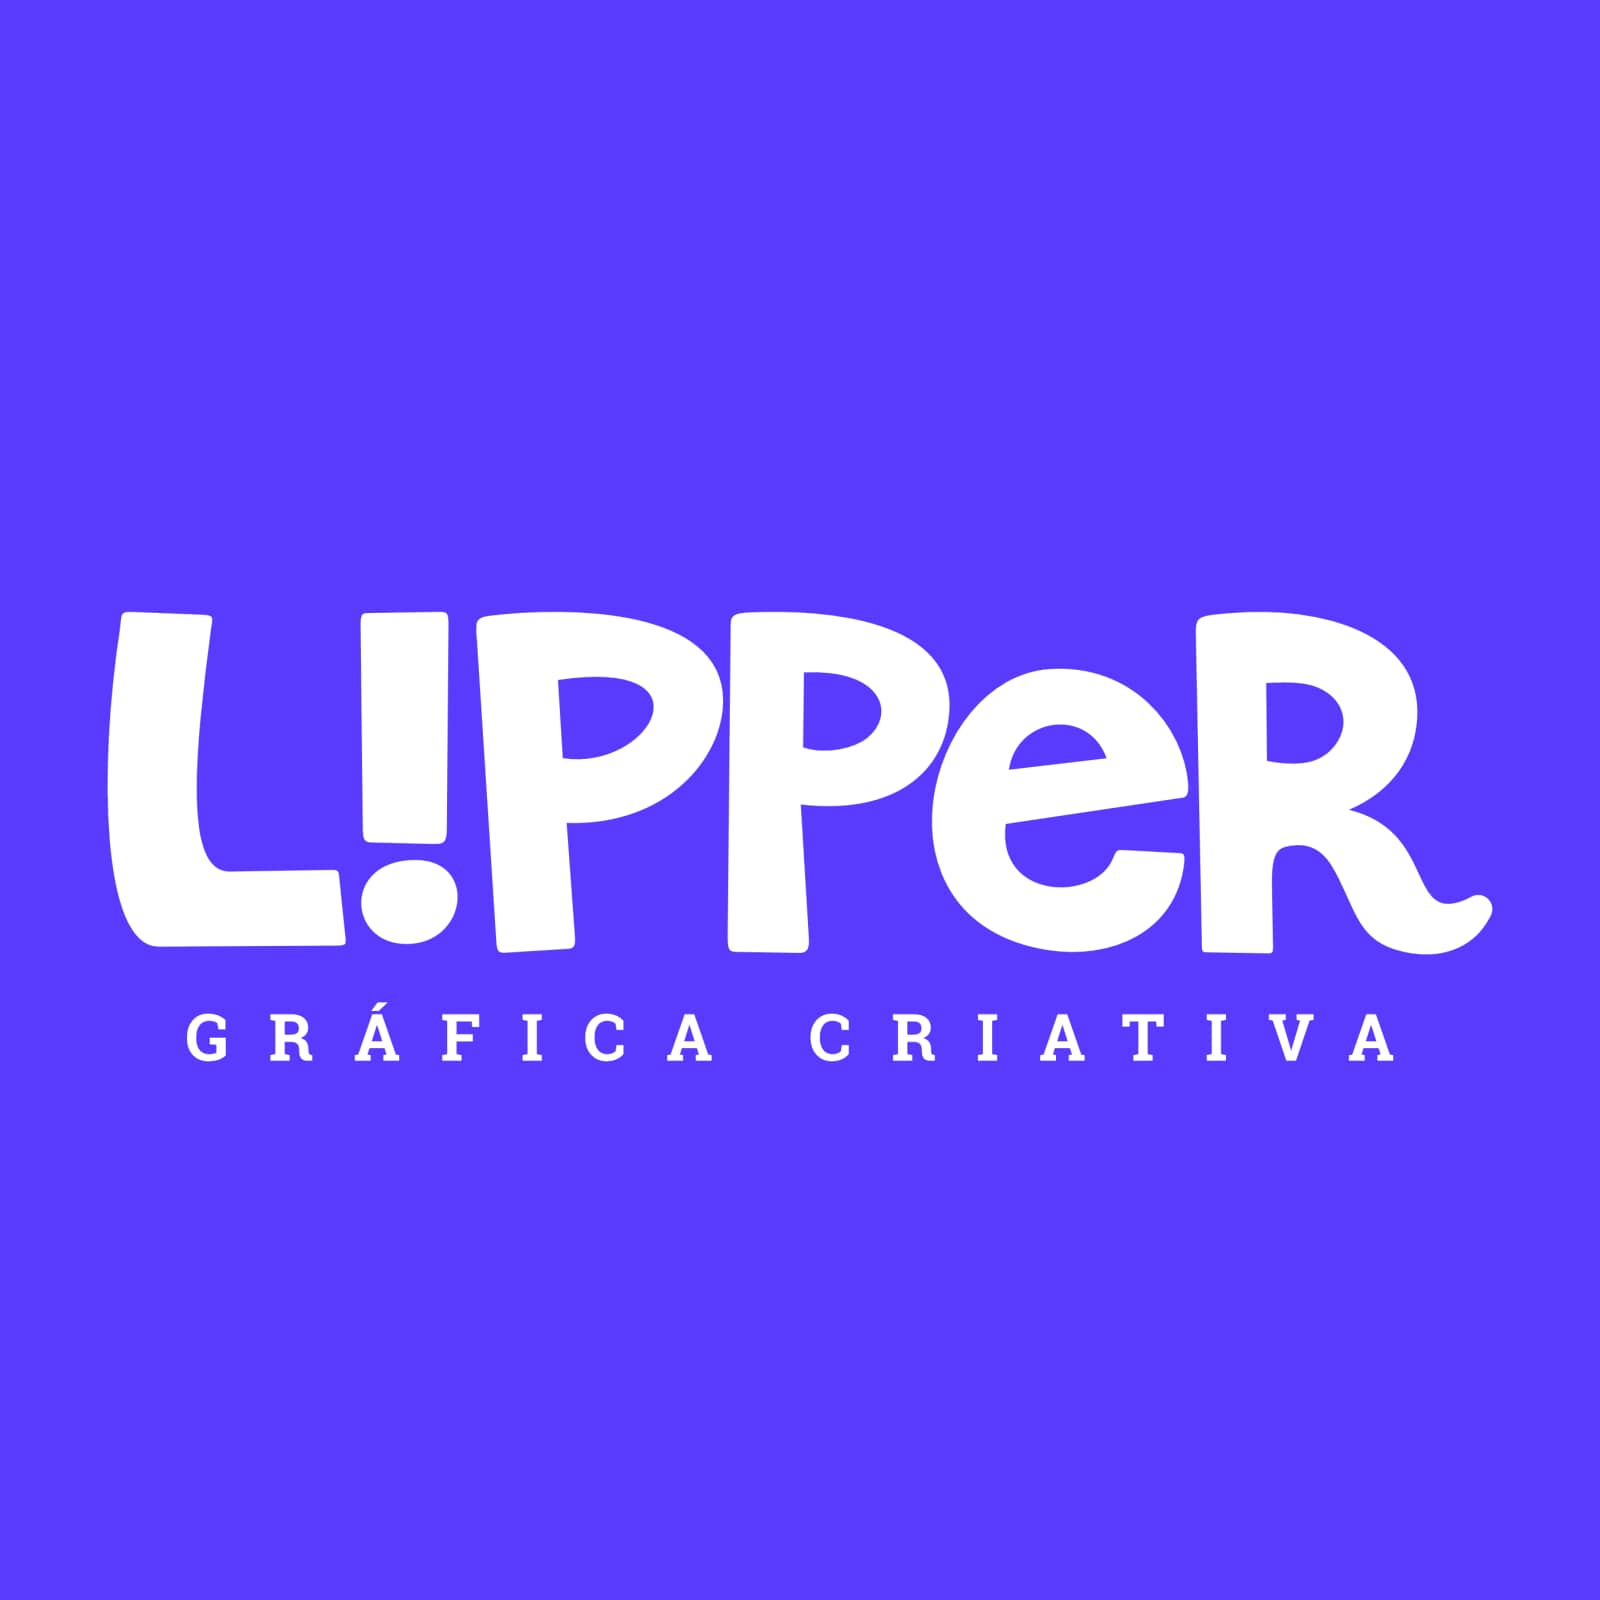 Lipper Gráfica Criativa Ltda